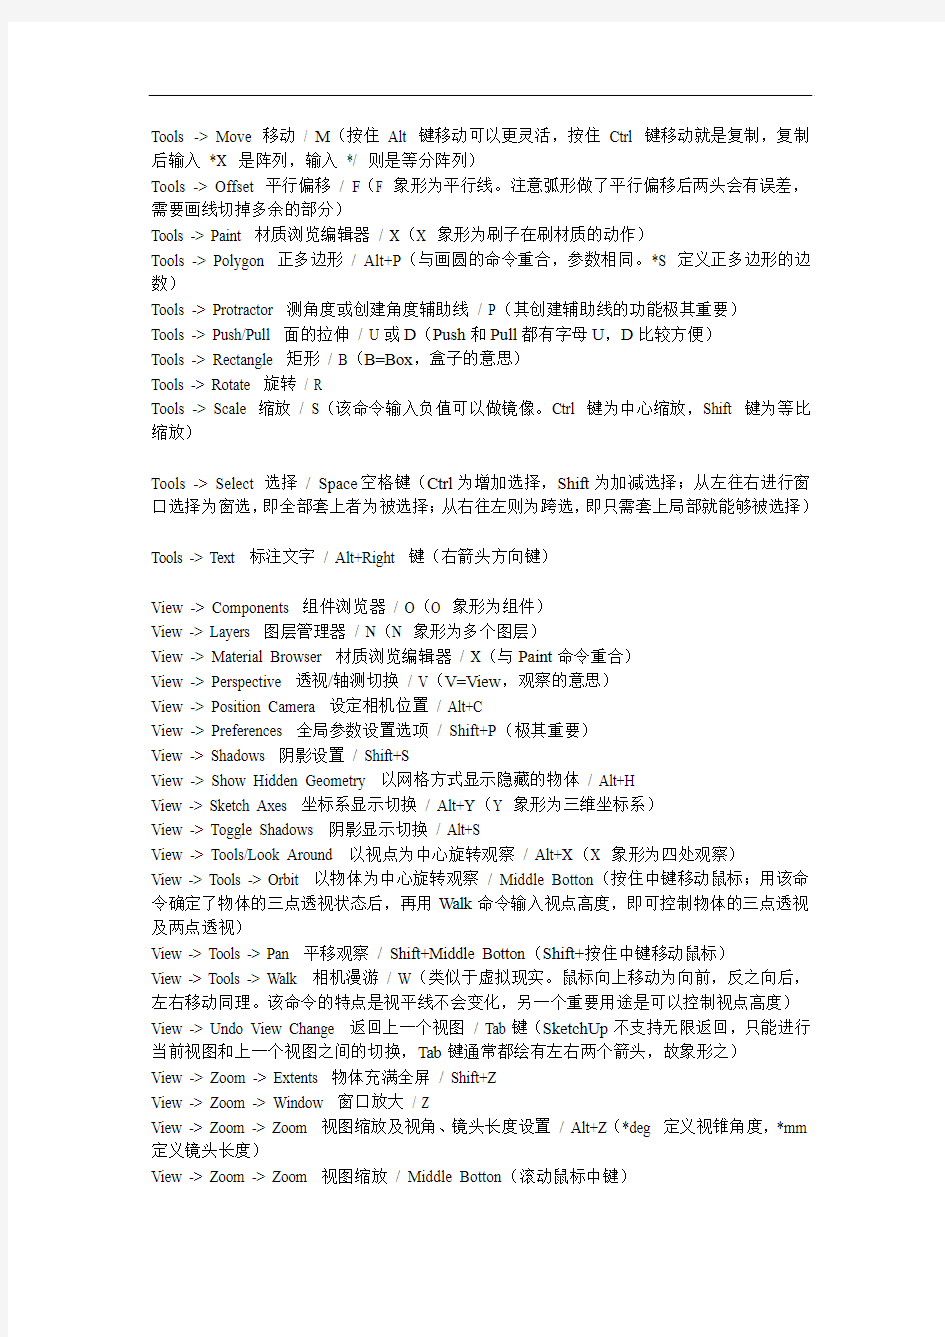 SketchUp命令的中文翻译、要点解说及快键设定